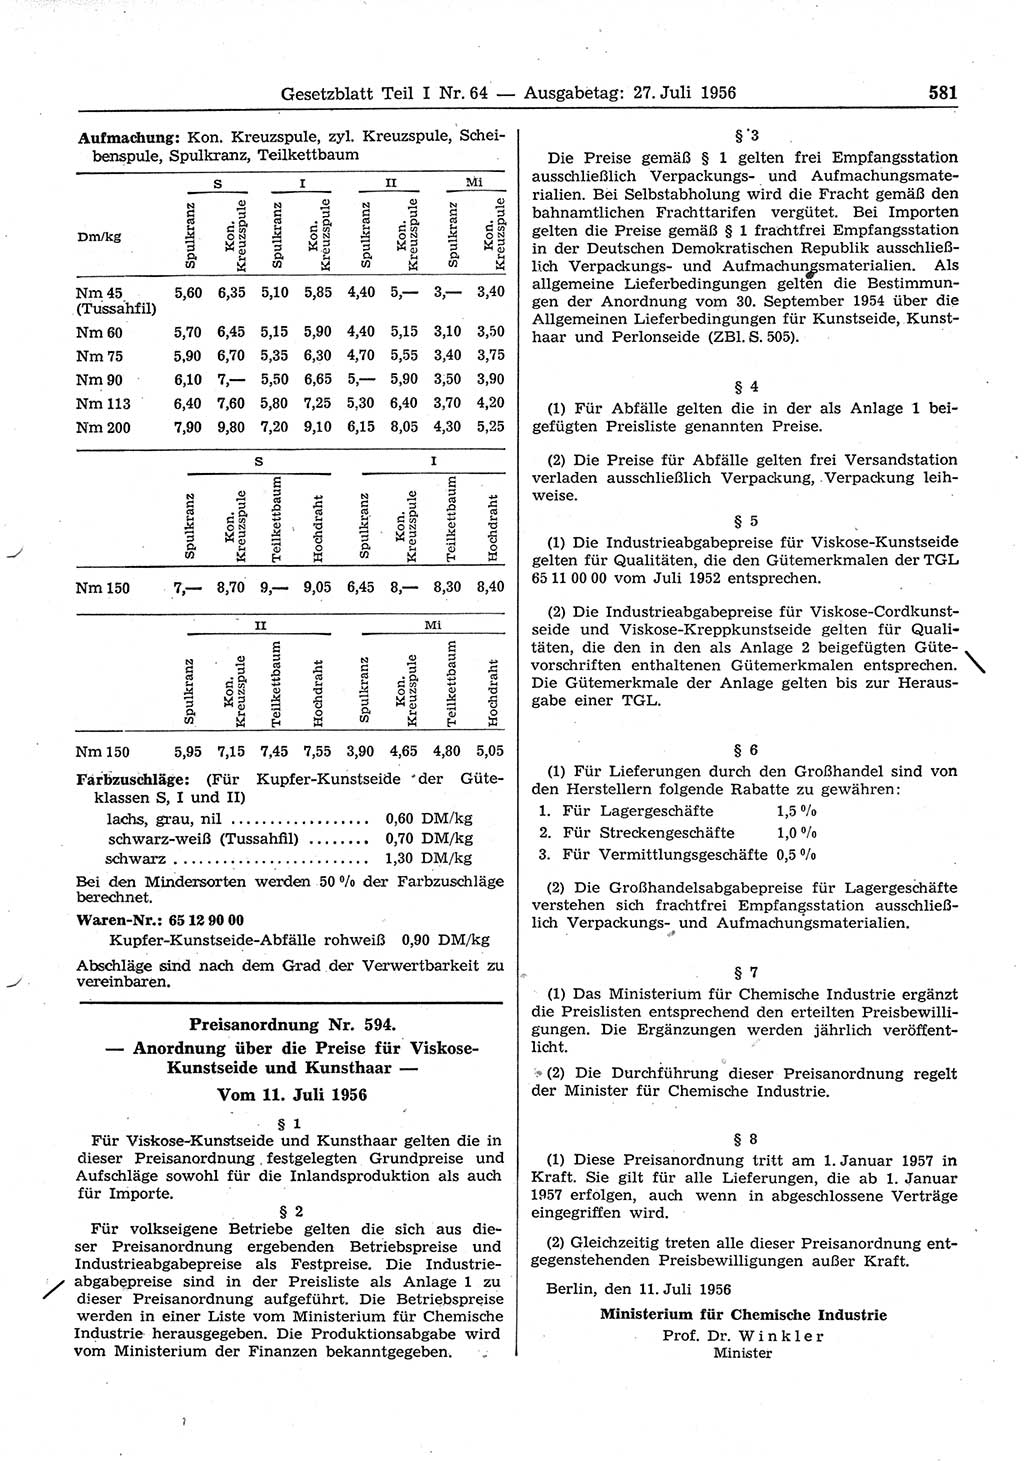 Gesetzblatt (GBl.) der Deutschen Demokratischen Republik (DDR) Teil Ⅰ 1956, Seite 581 (GBl. DDR Ⅰ 1956, S. 581)